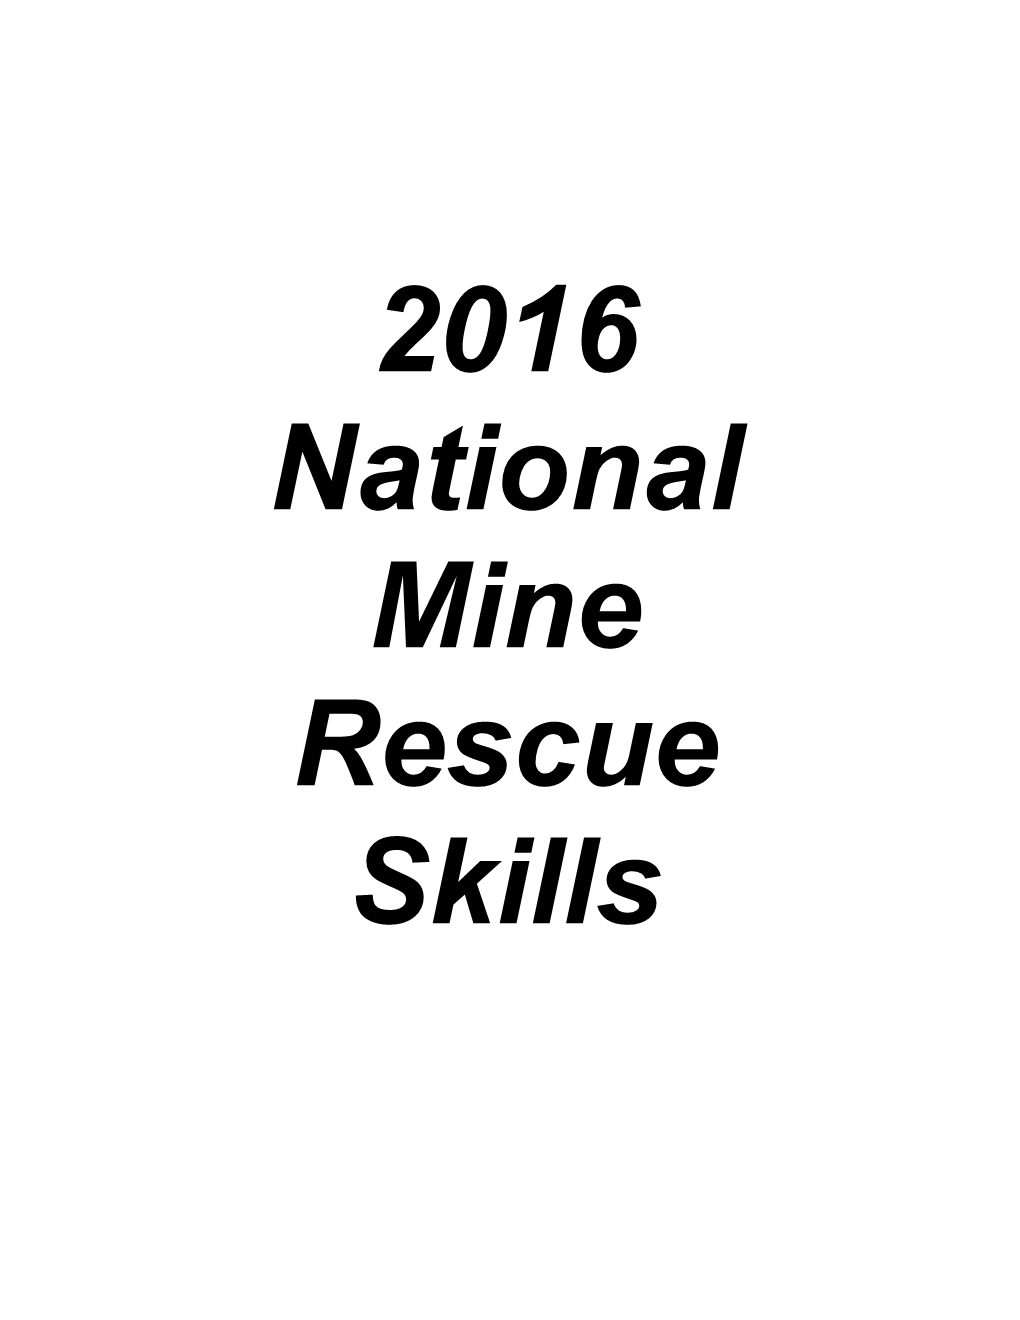 National Mine Rescue Skills